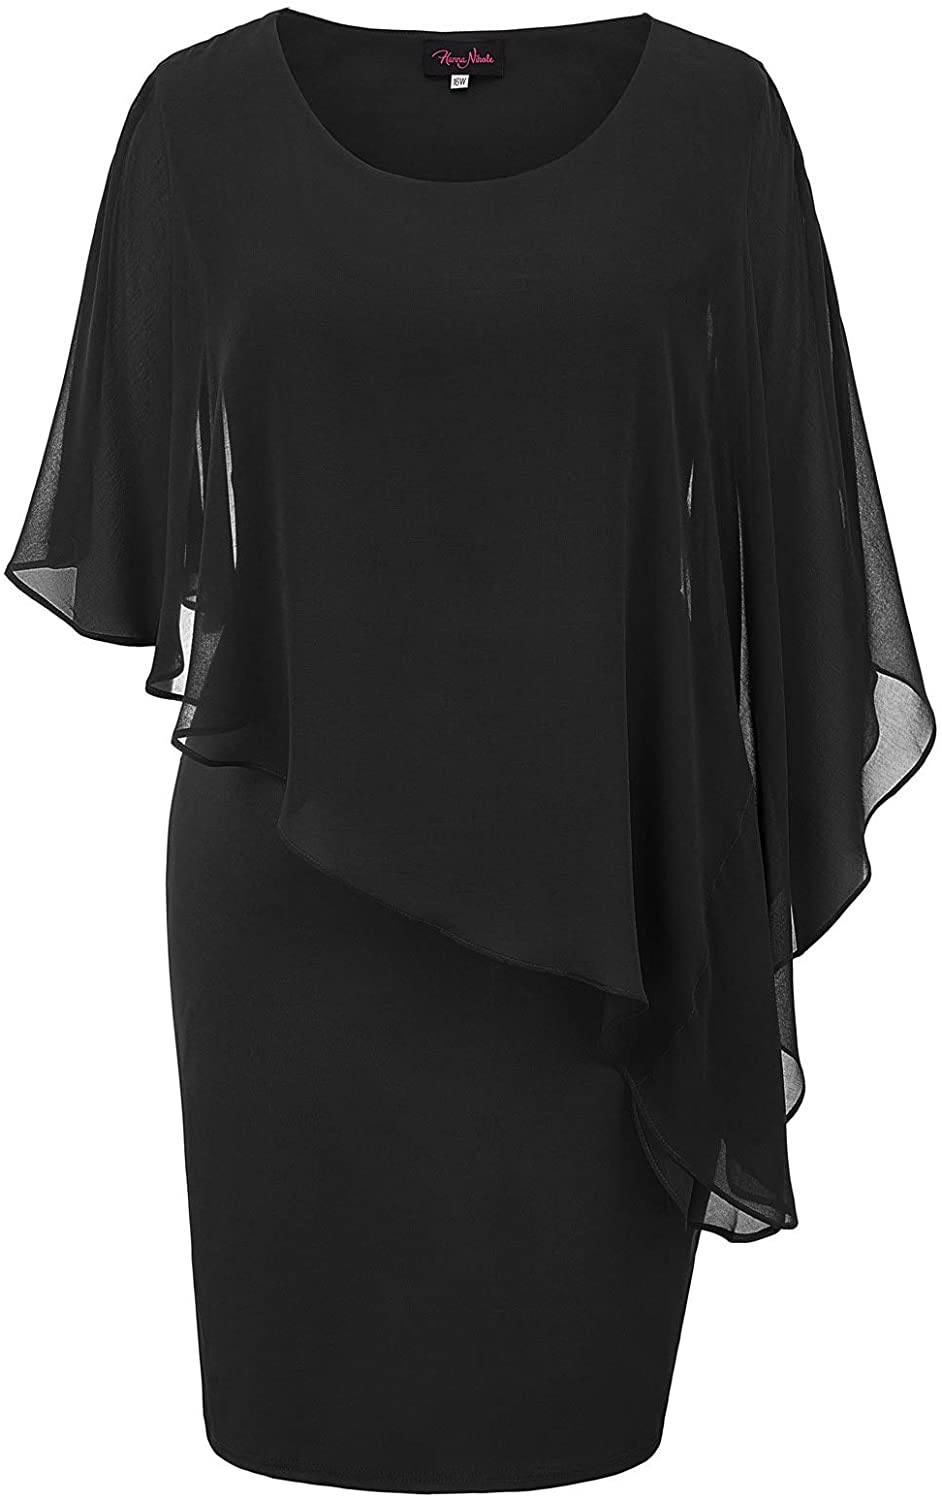 Hanna Nikole Plus Size Black Dresses for Women Funeral Short